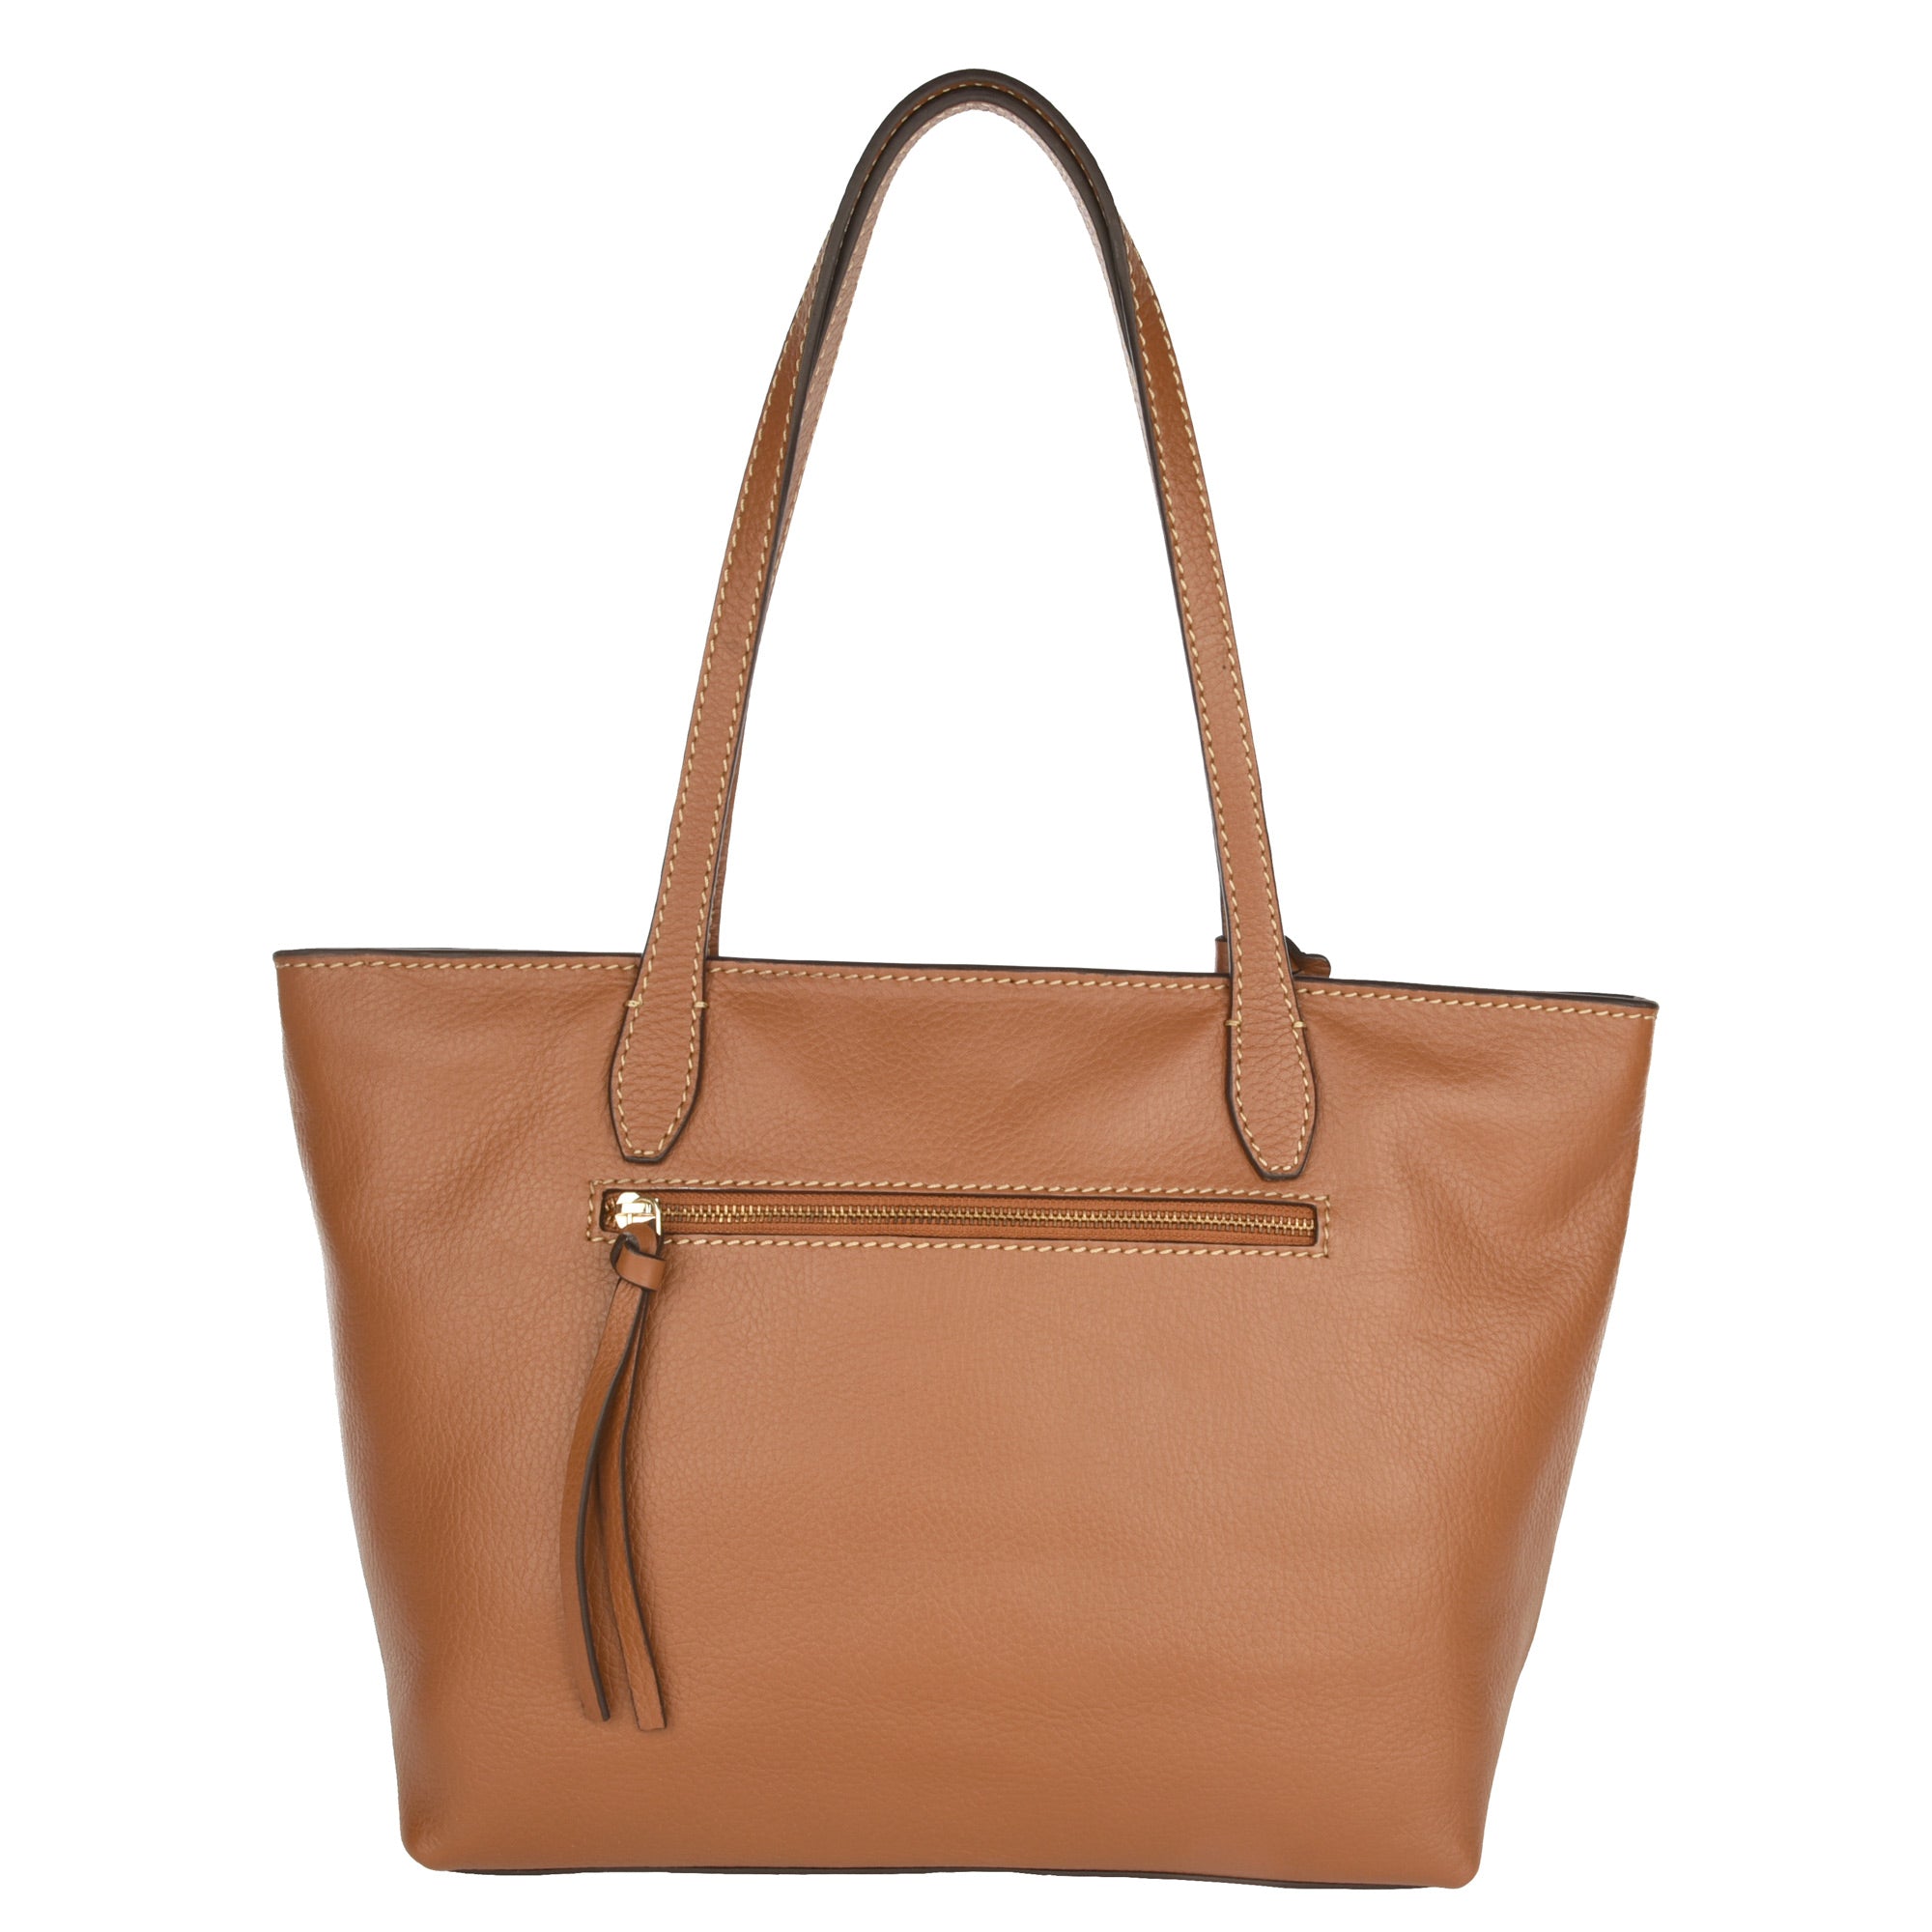 NEW EDEN - Grained leather shoulder handbag